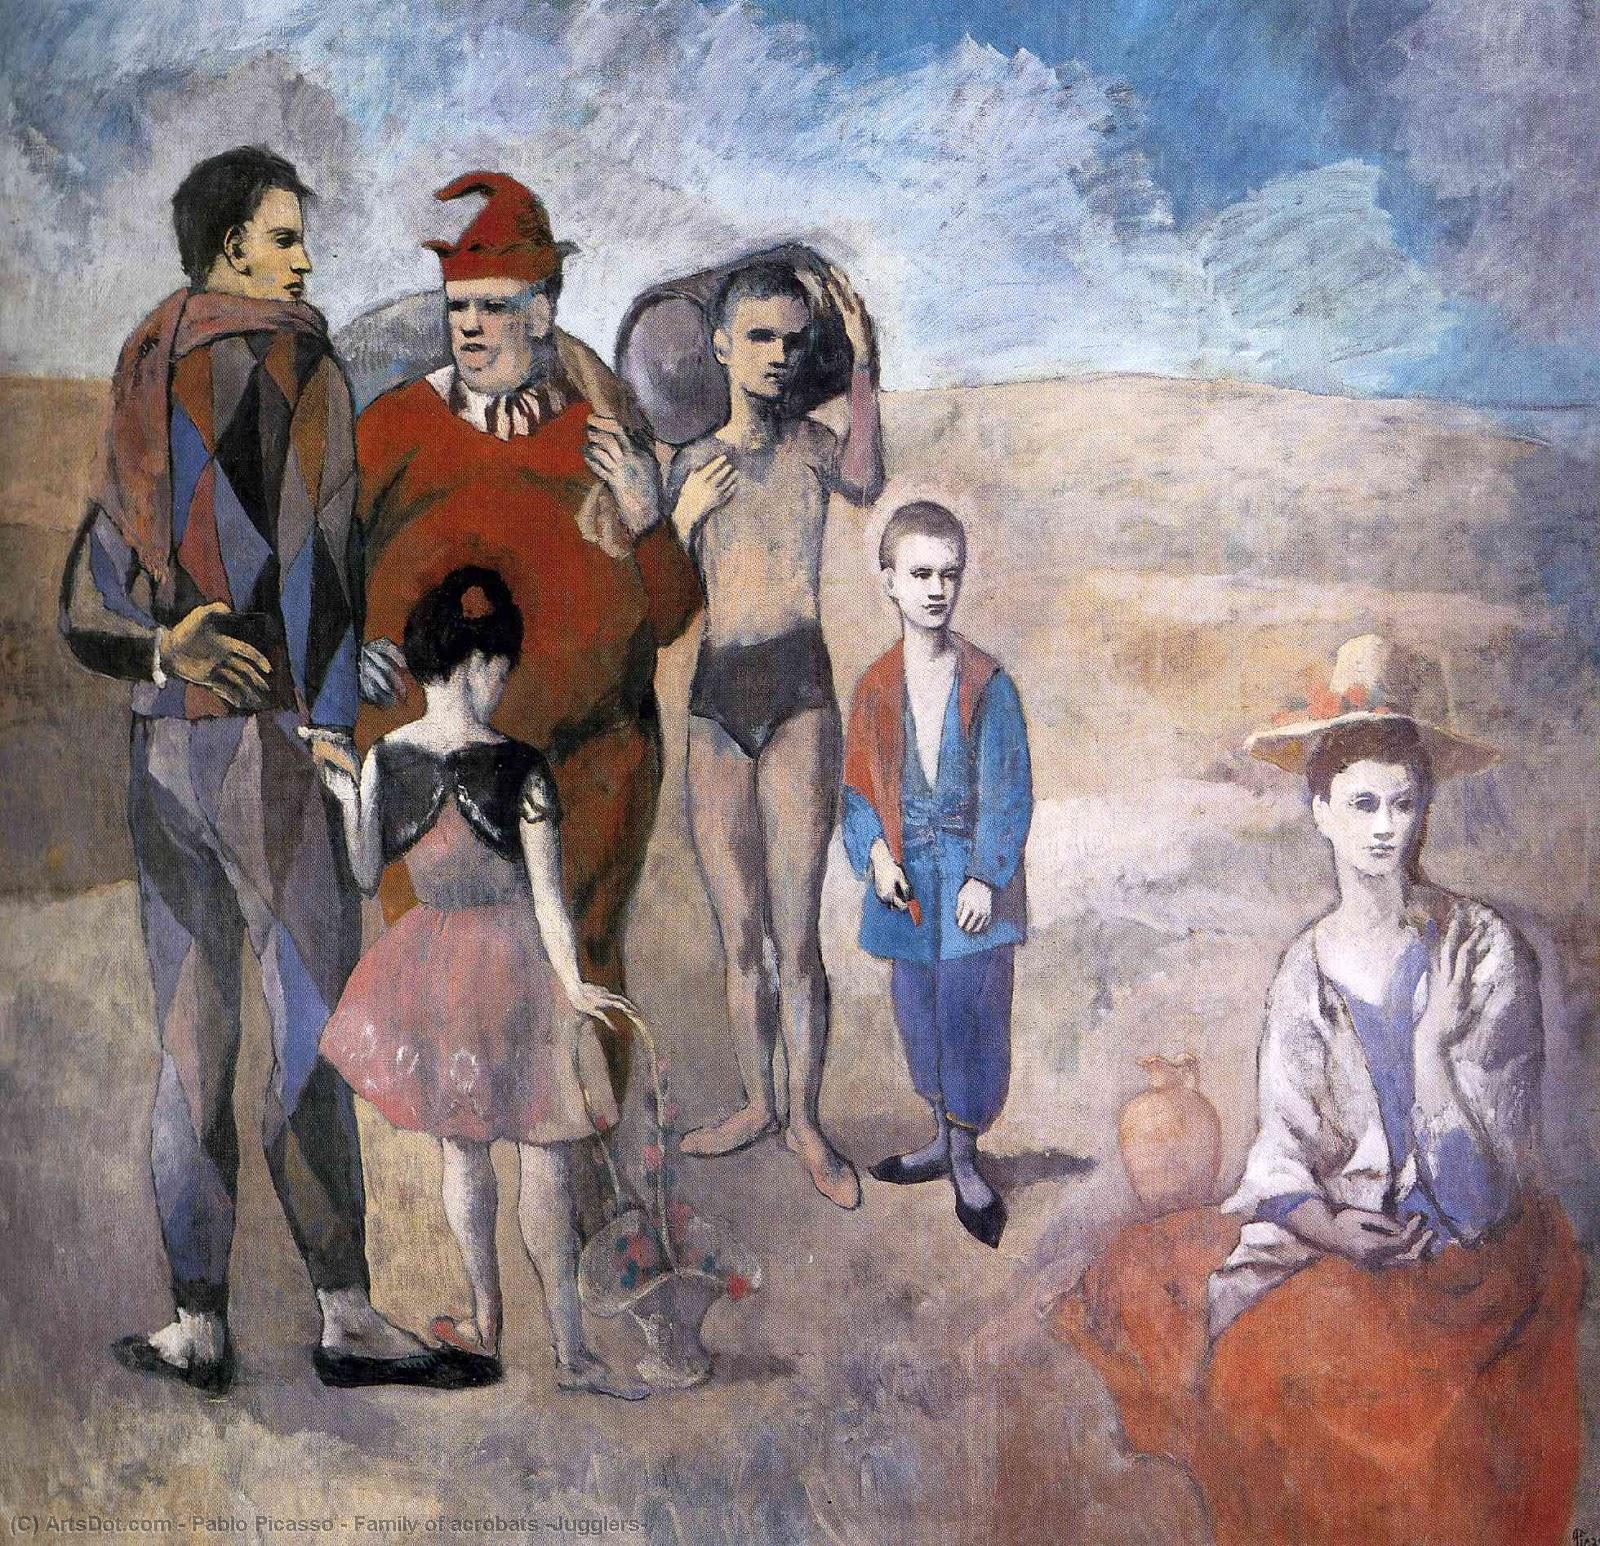 WikiOO.org - Enciklopedija dailės - Tapyba, meno kuriniai Pablo Picasso - Family of acrobats (Jugglers)